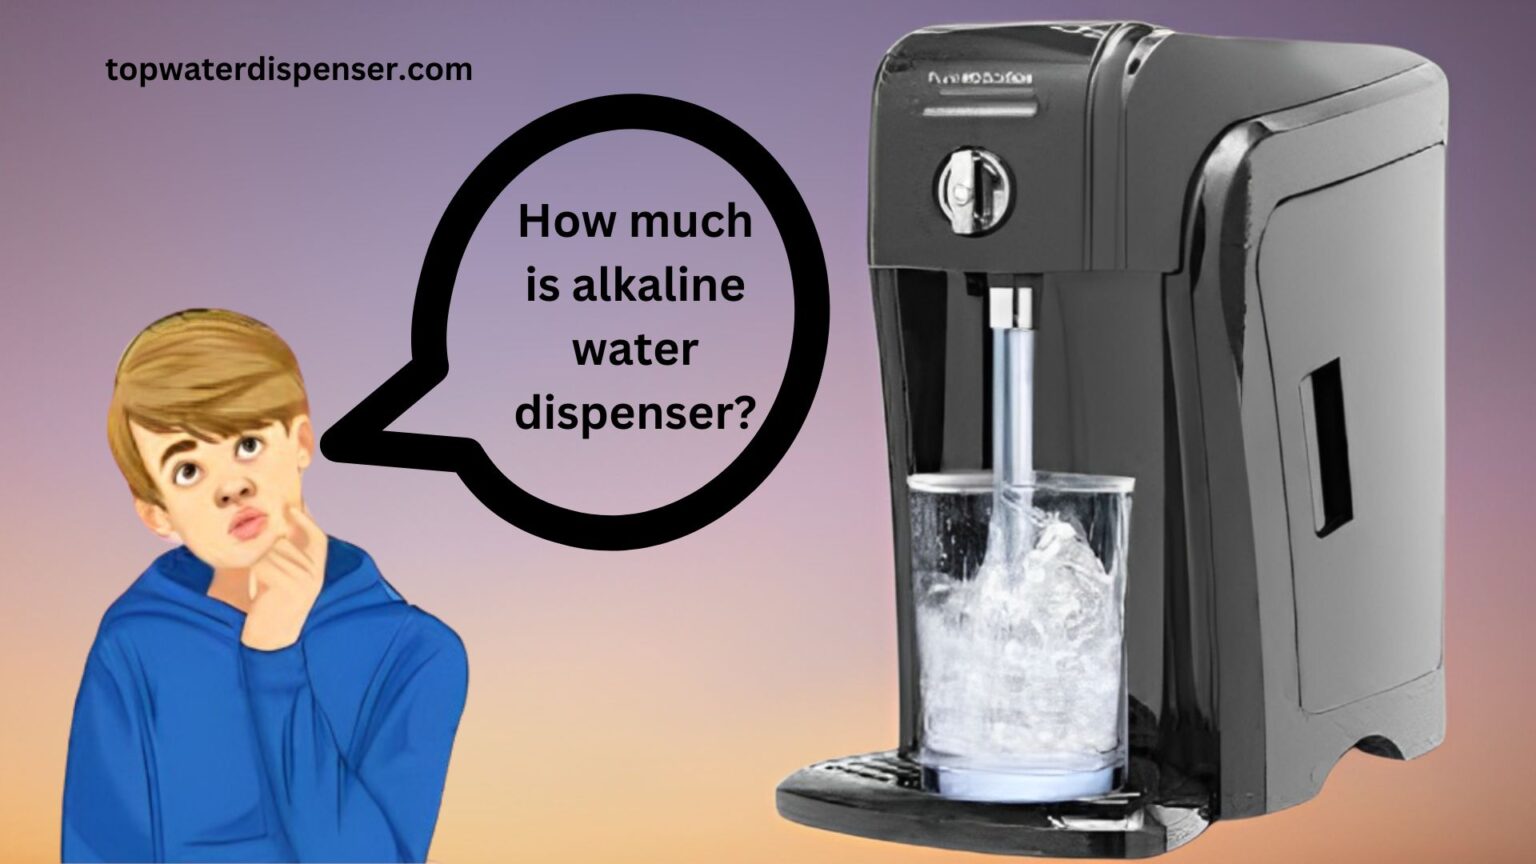 How much is alkaline water dispenser?